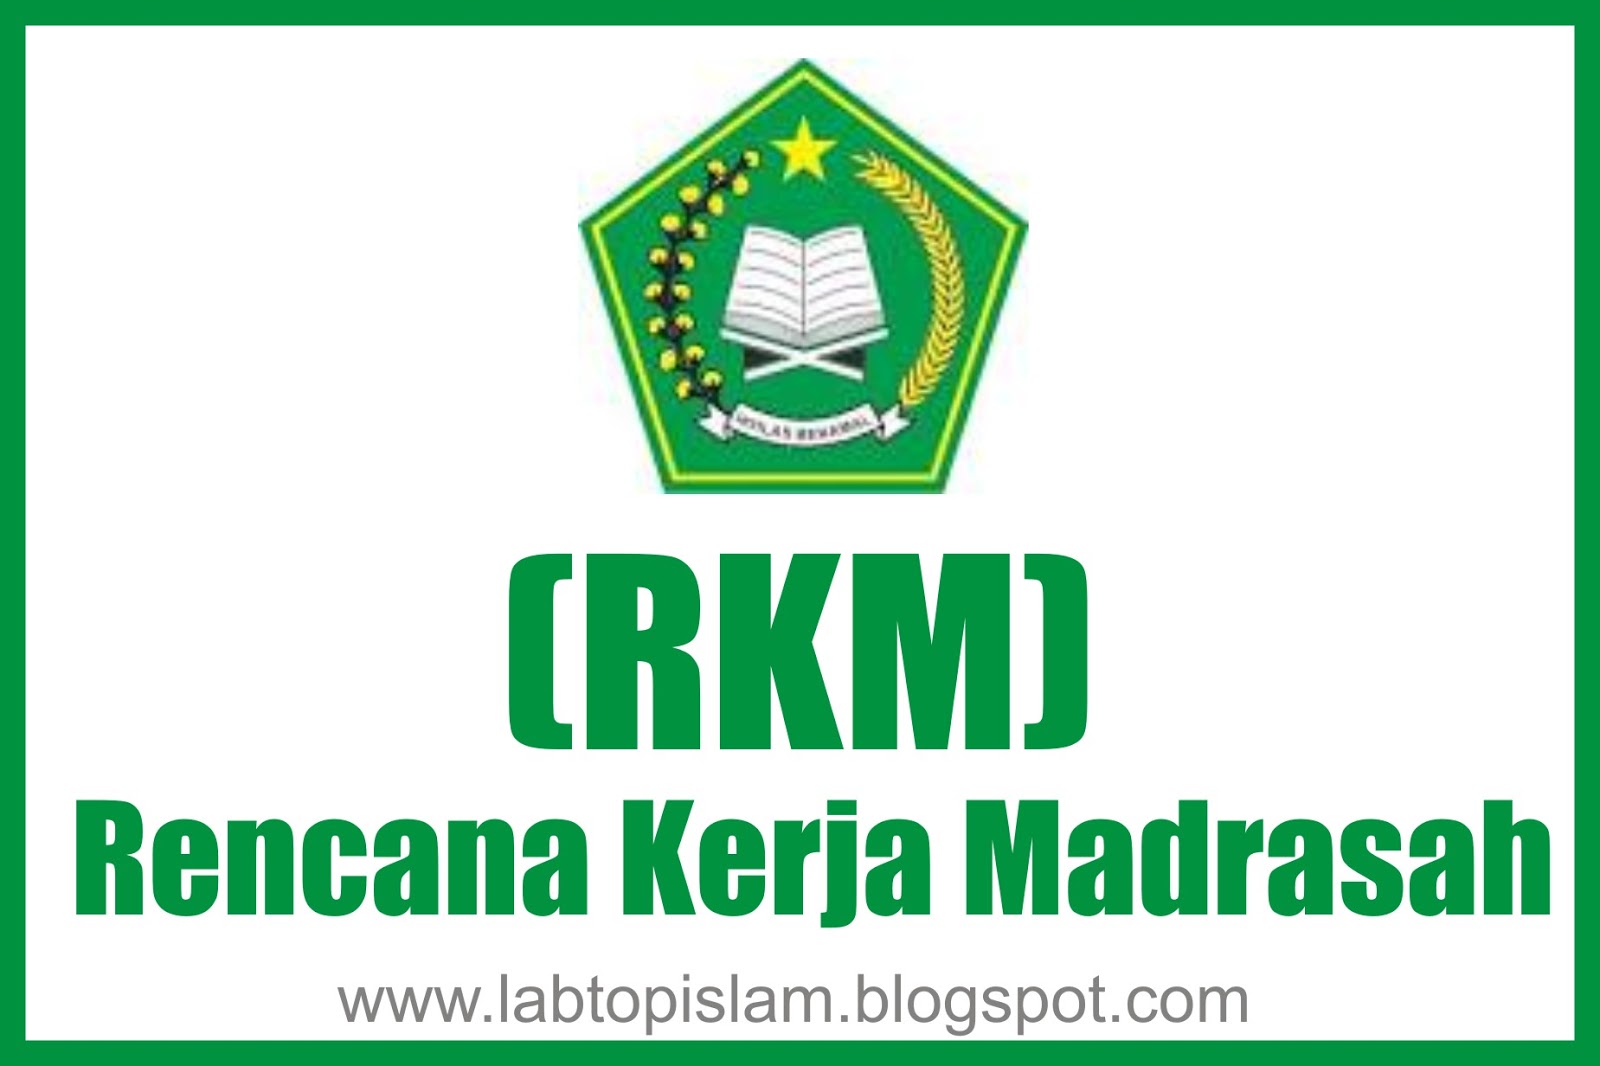 49+ Rkjm madrasah ibtidaiyah 2020 information